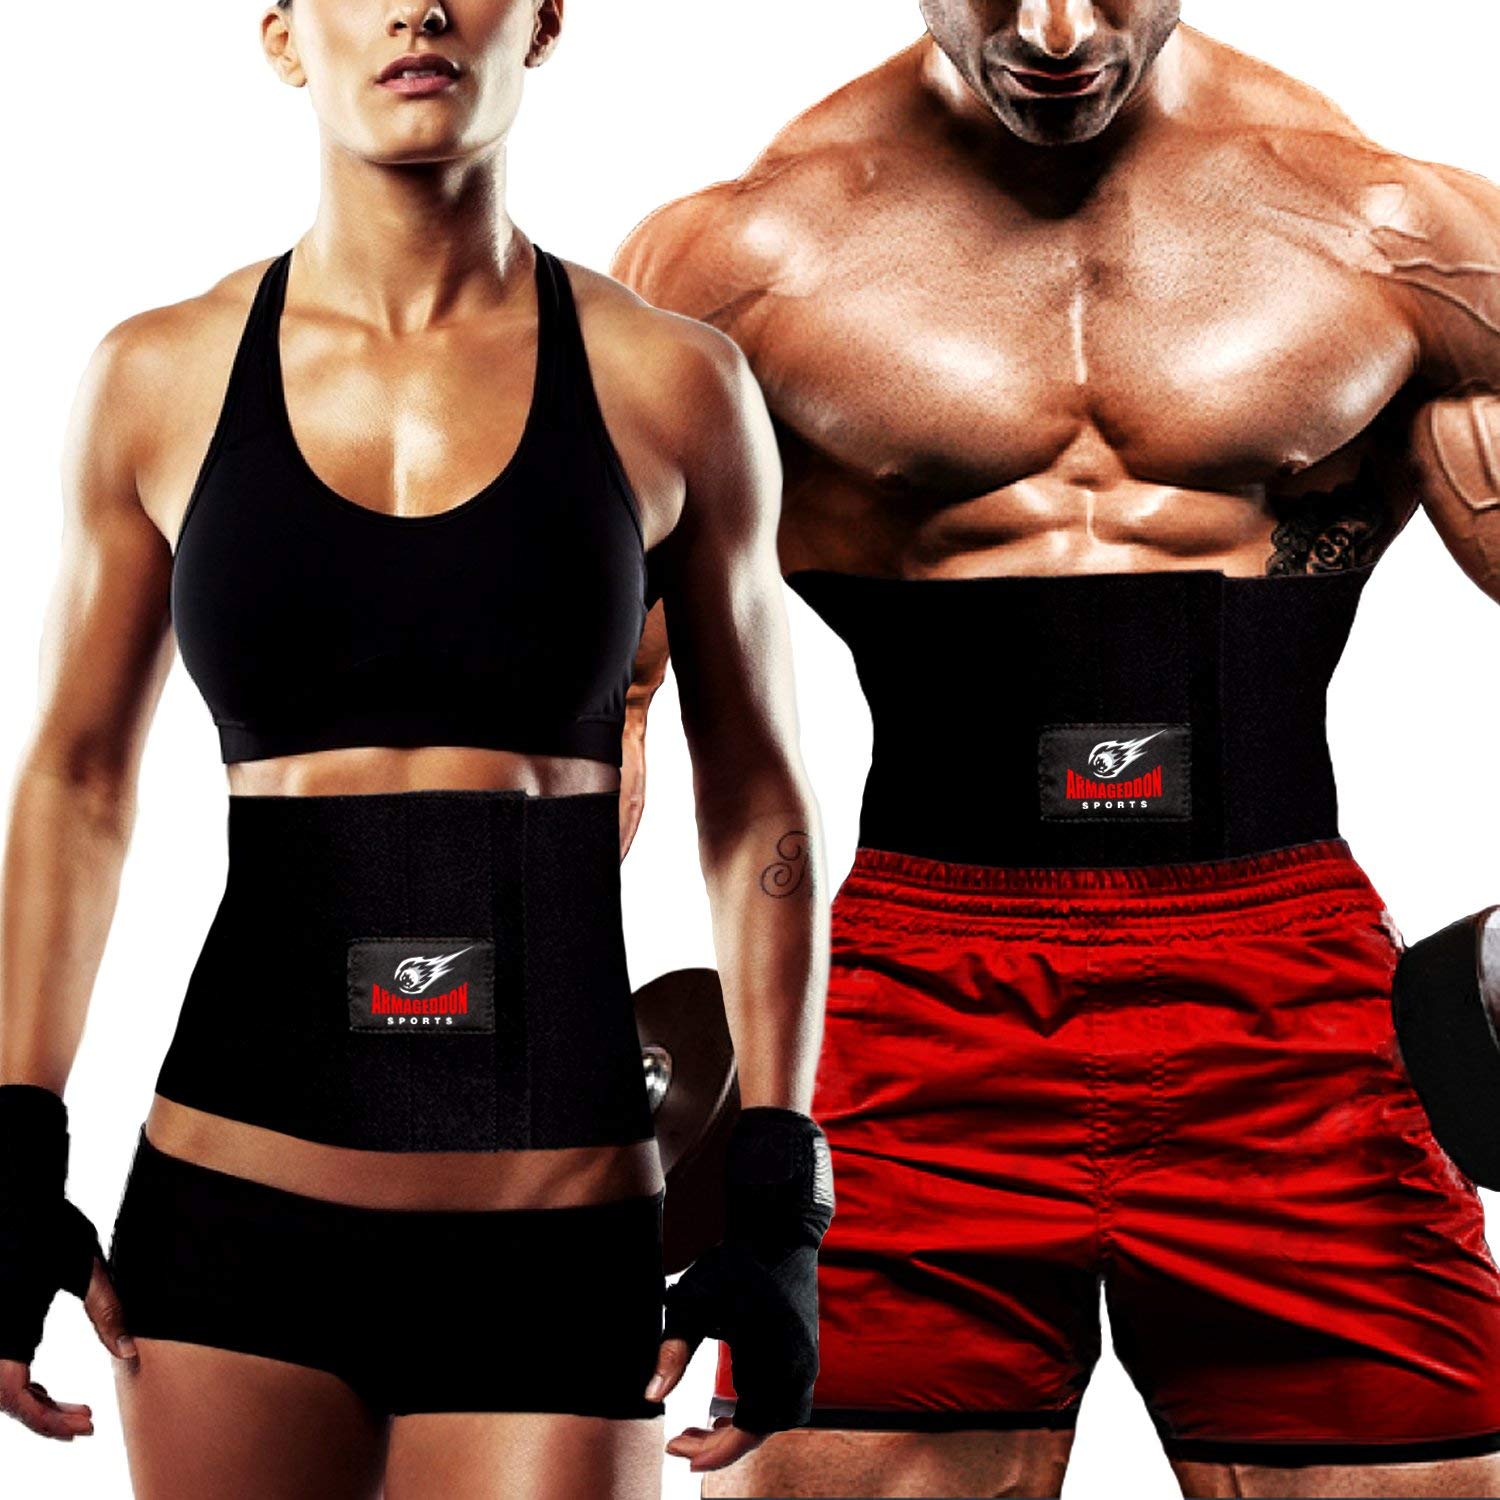 ActiveGear Neoprene Sweat Belt Waist Trimmer Belt For Men and